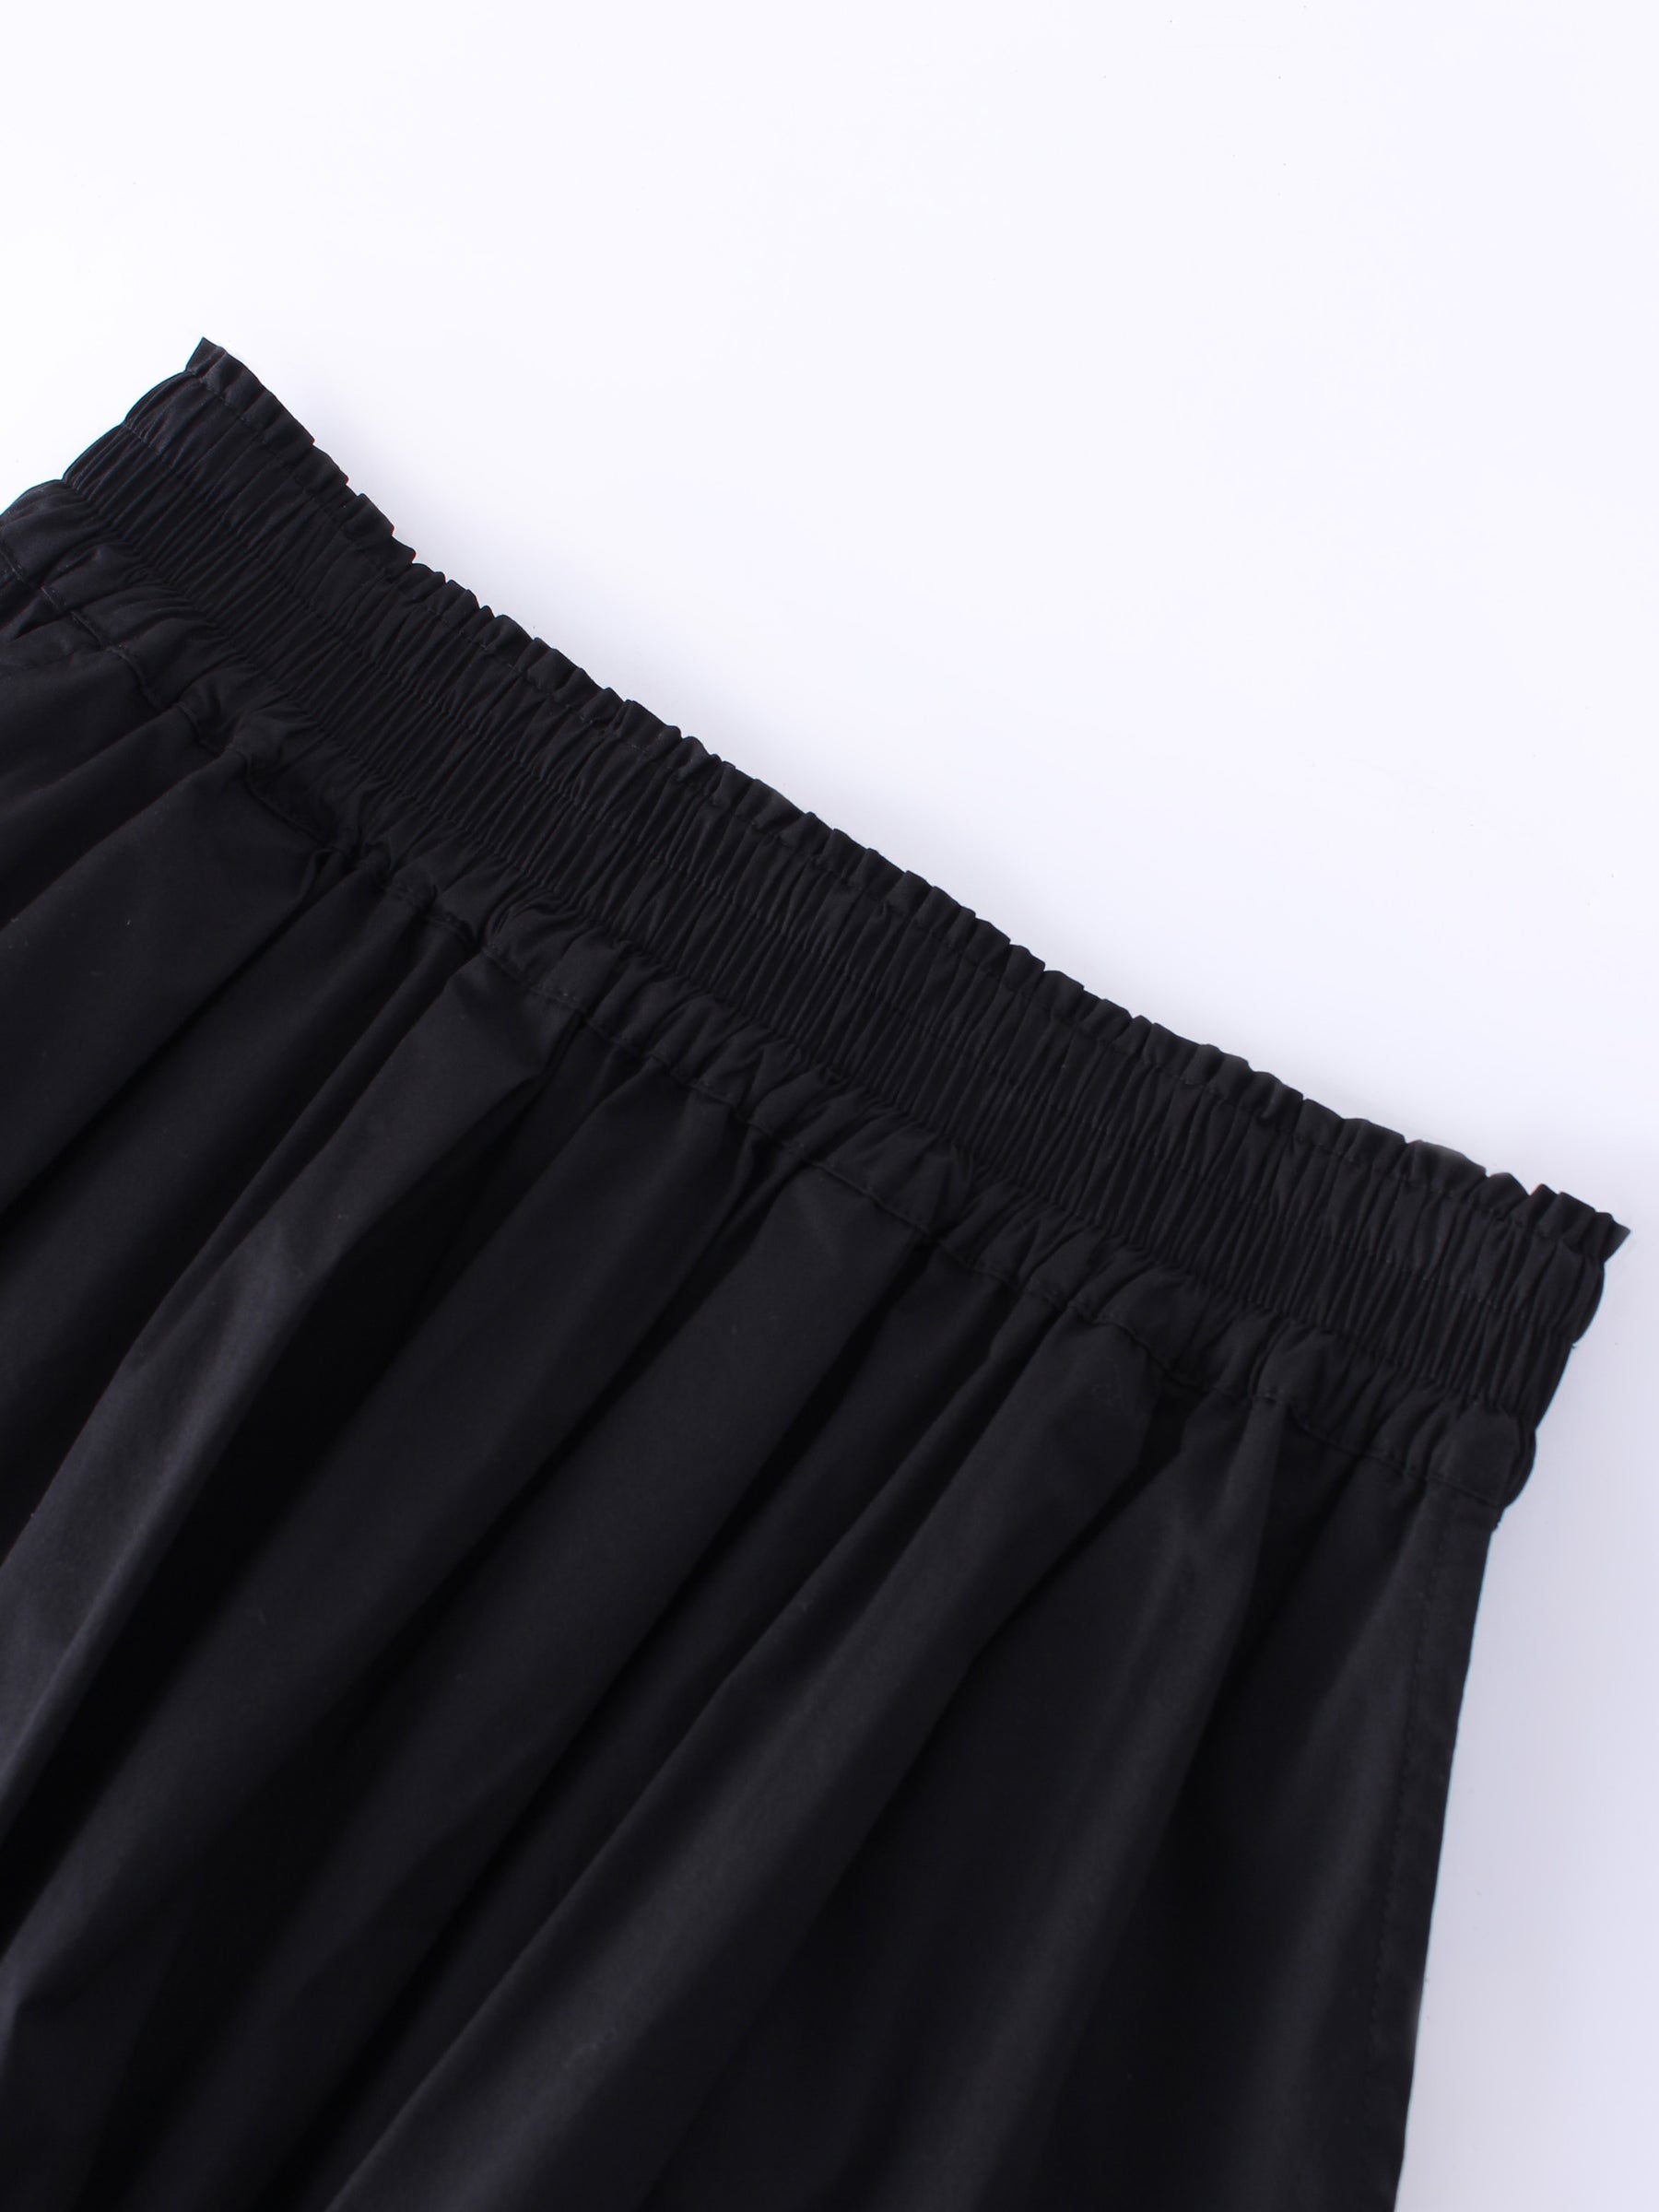 Gathered Waist Skirt-Black